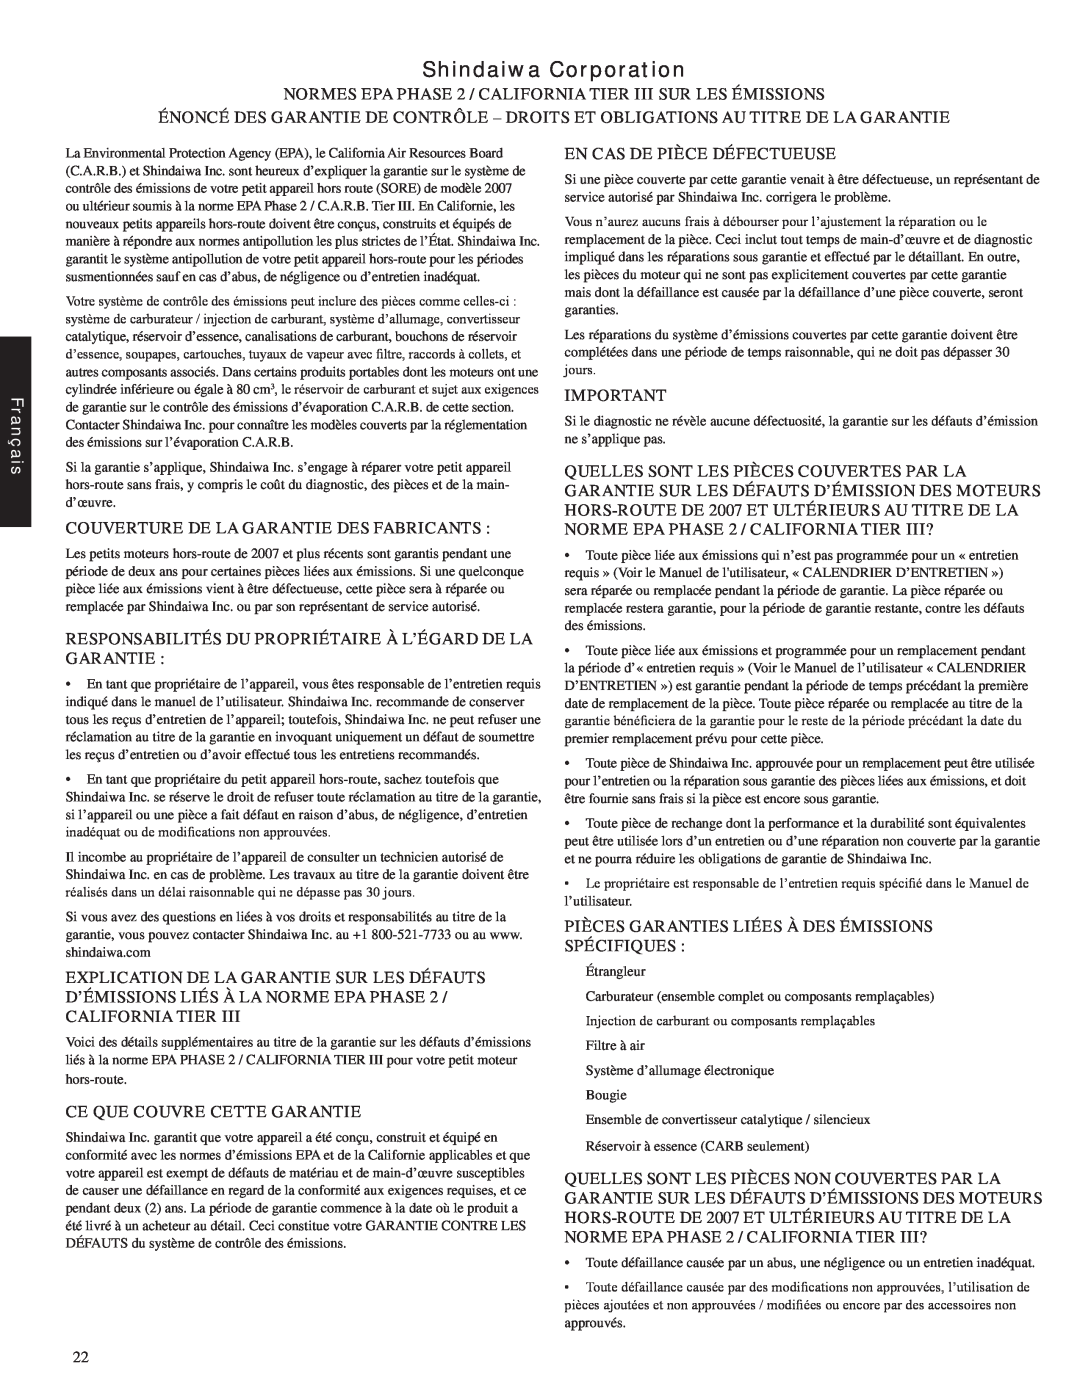 Shindaiwa EB212, 82051 manual Shindaiwa Corporation, Français, Couverture De La Garantie Des Fabricants 